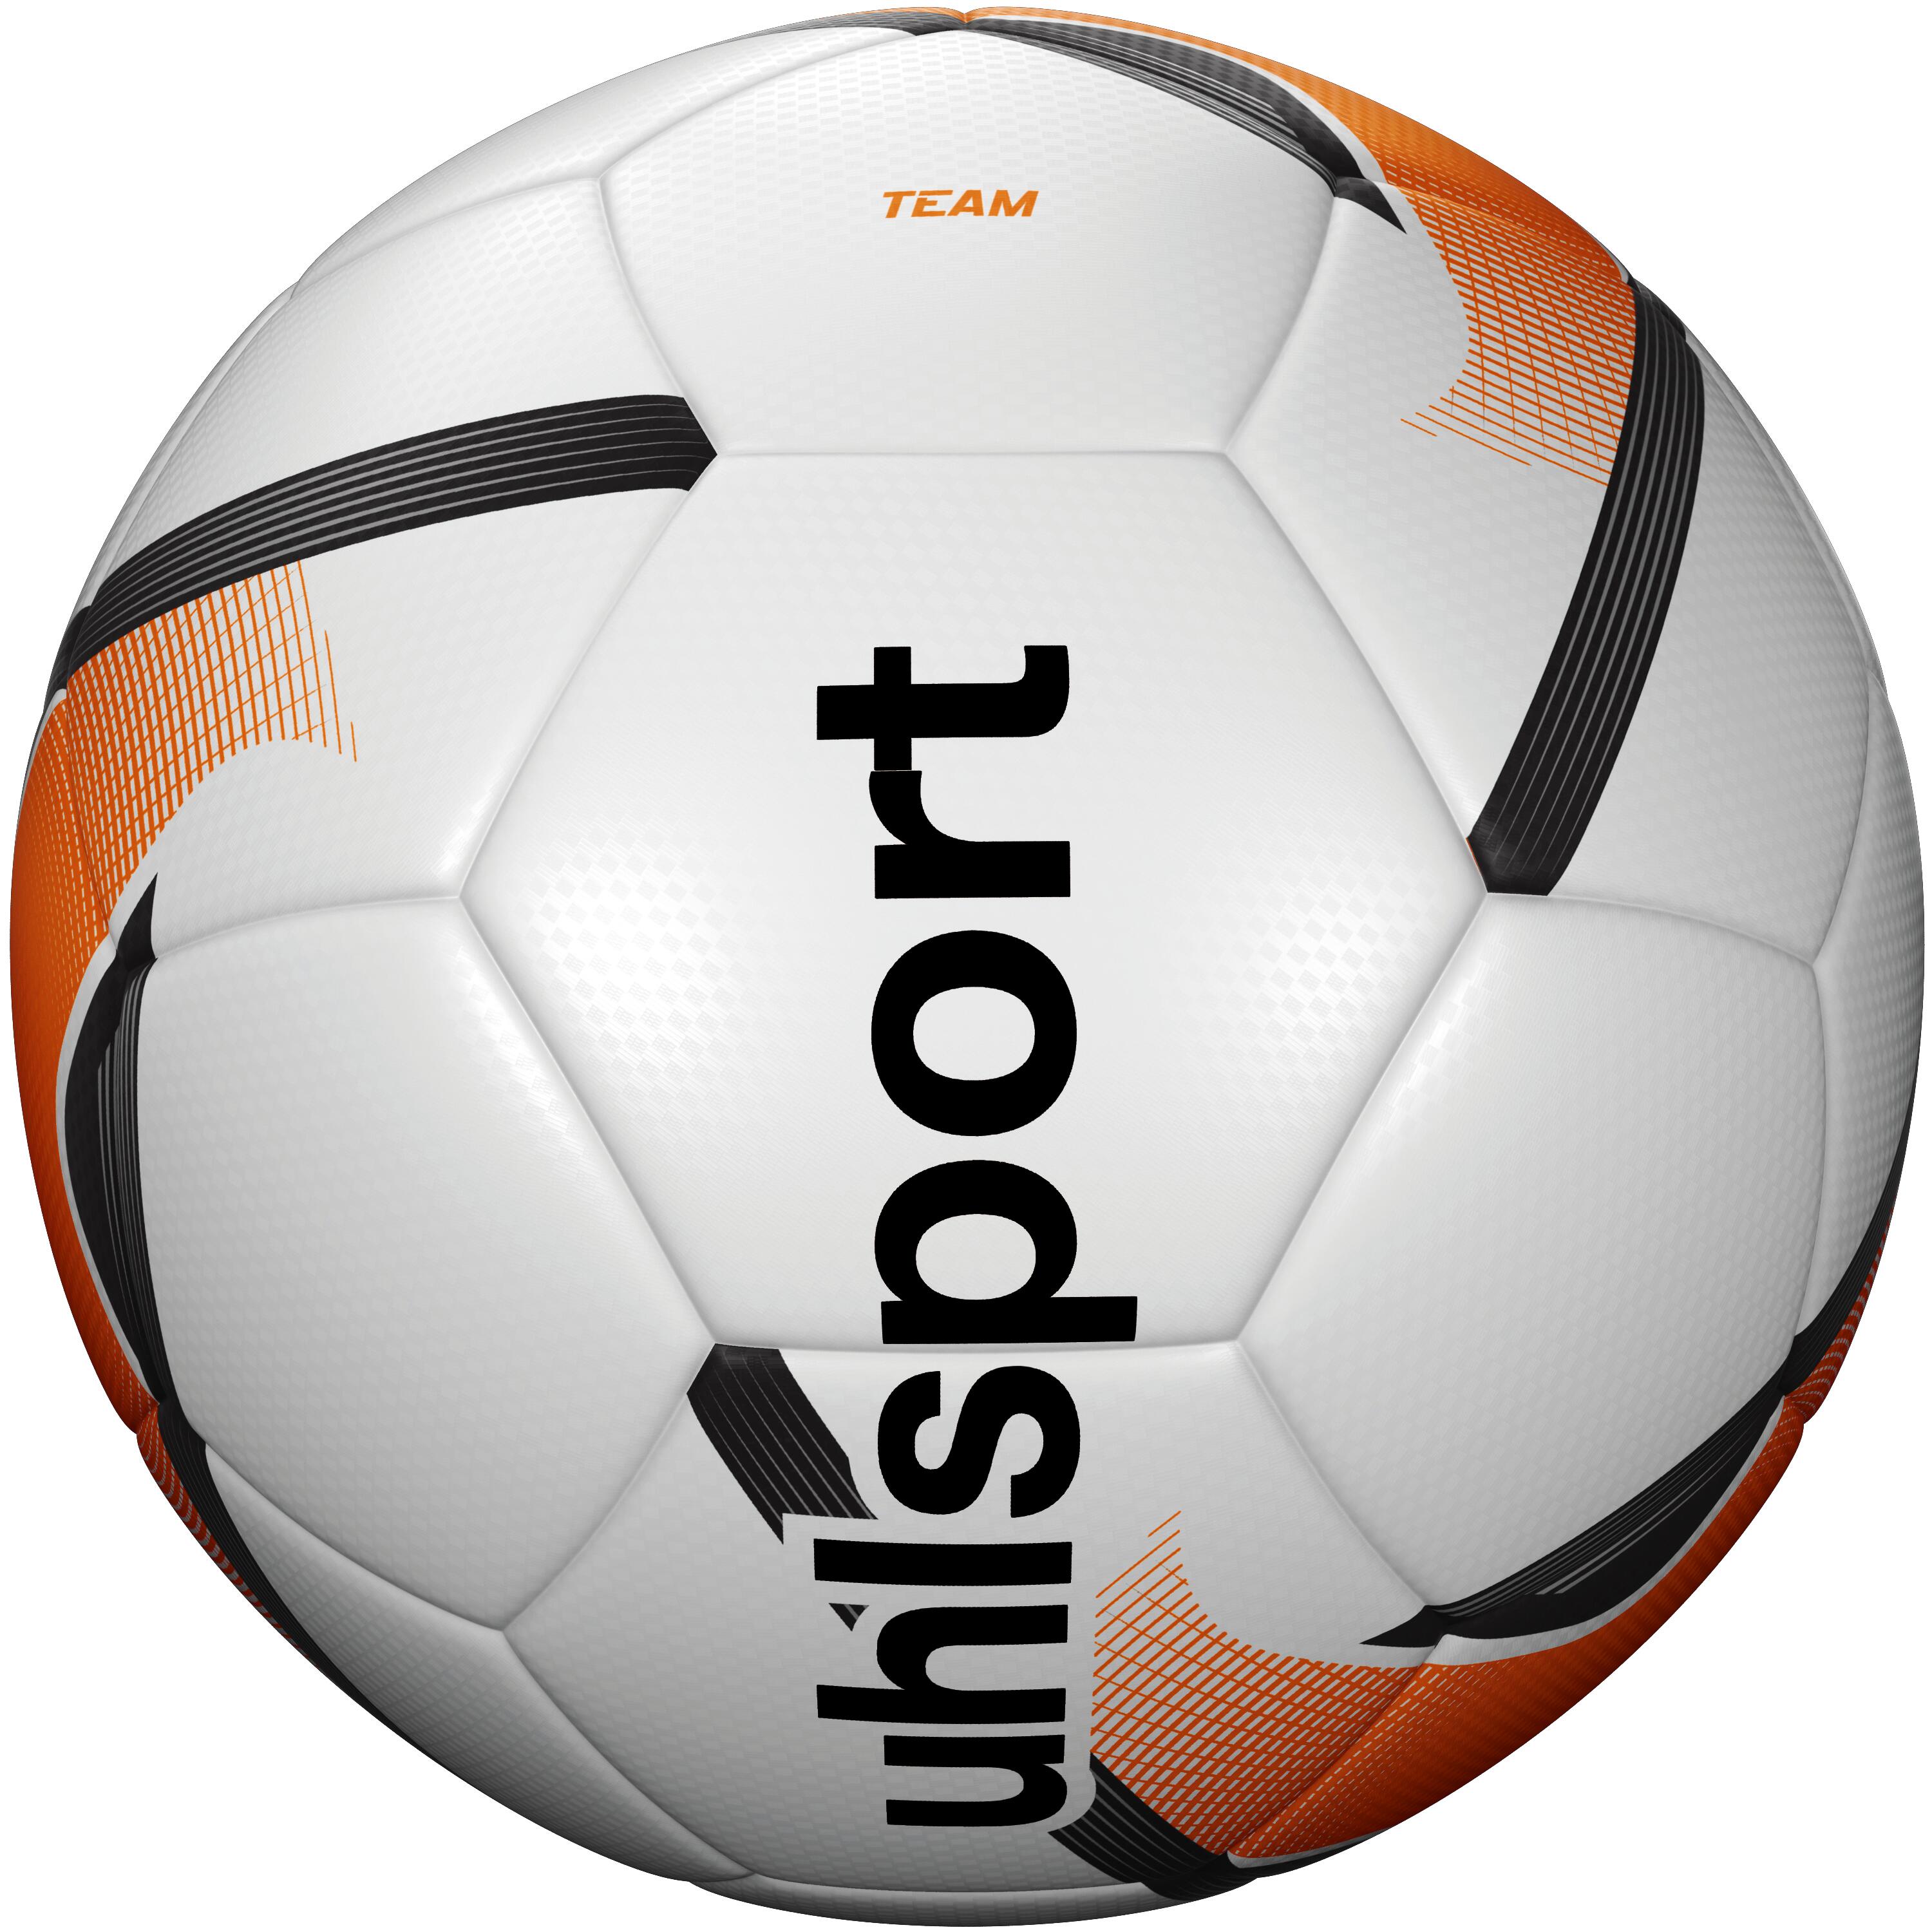 UHLSPORT Uhlsport Team Training Football Size 5 - White